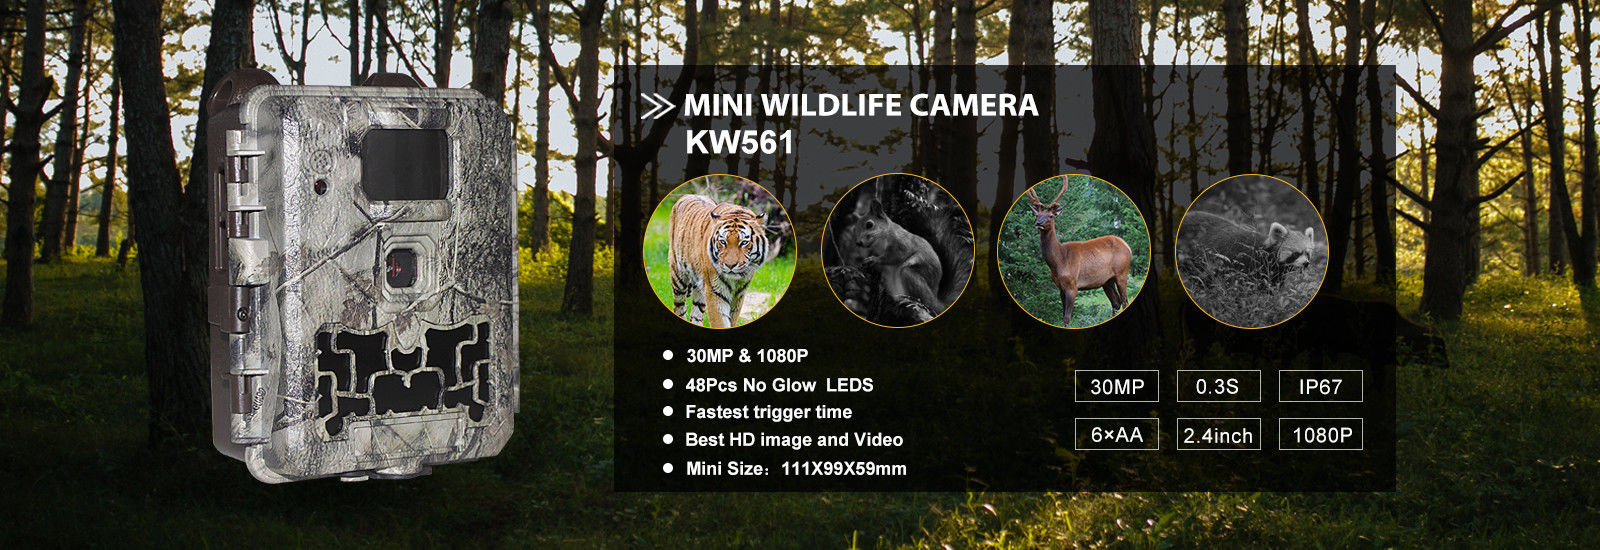 품질 디지털 야생동물 카메라 공장